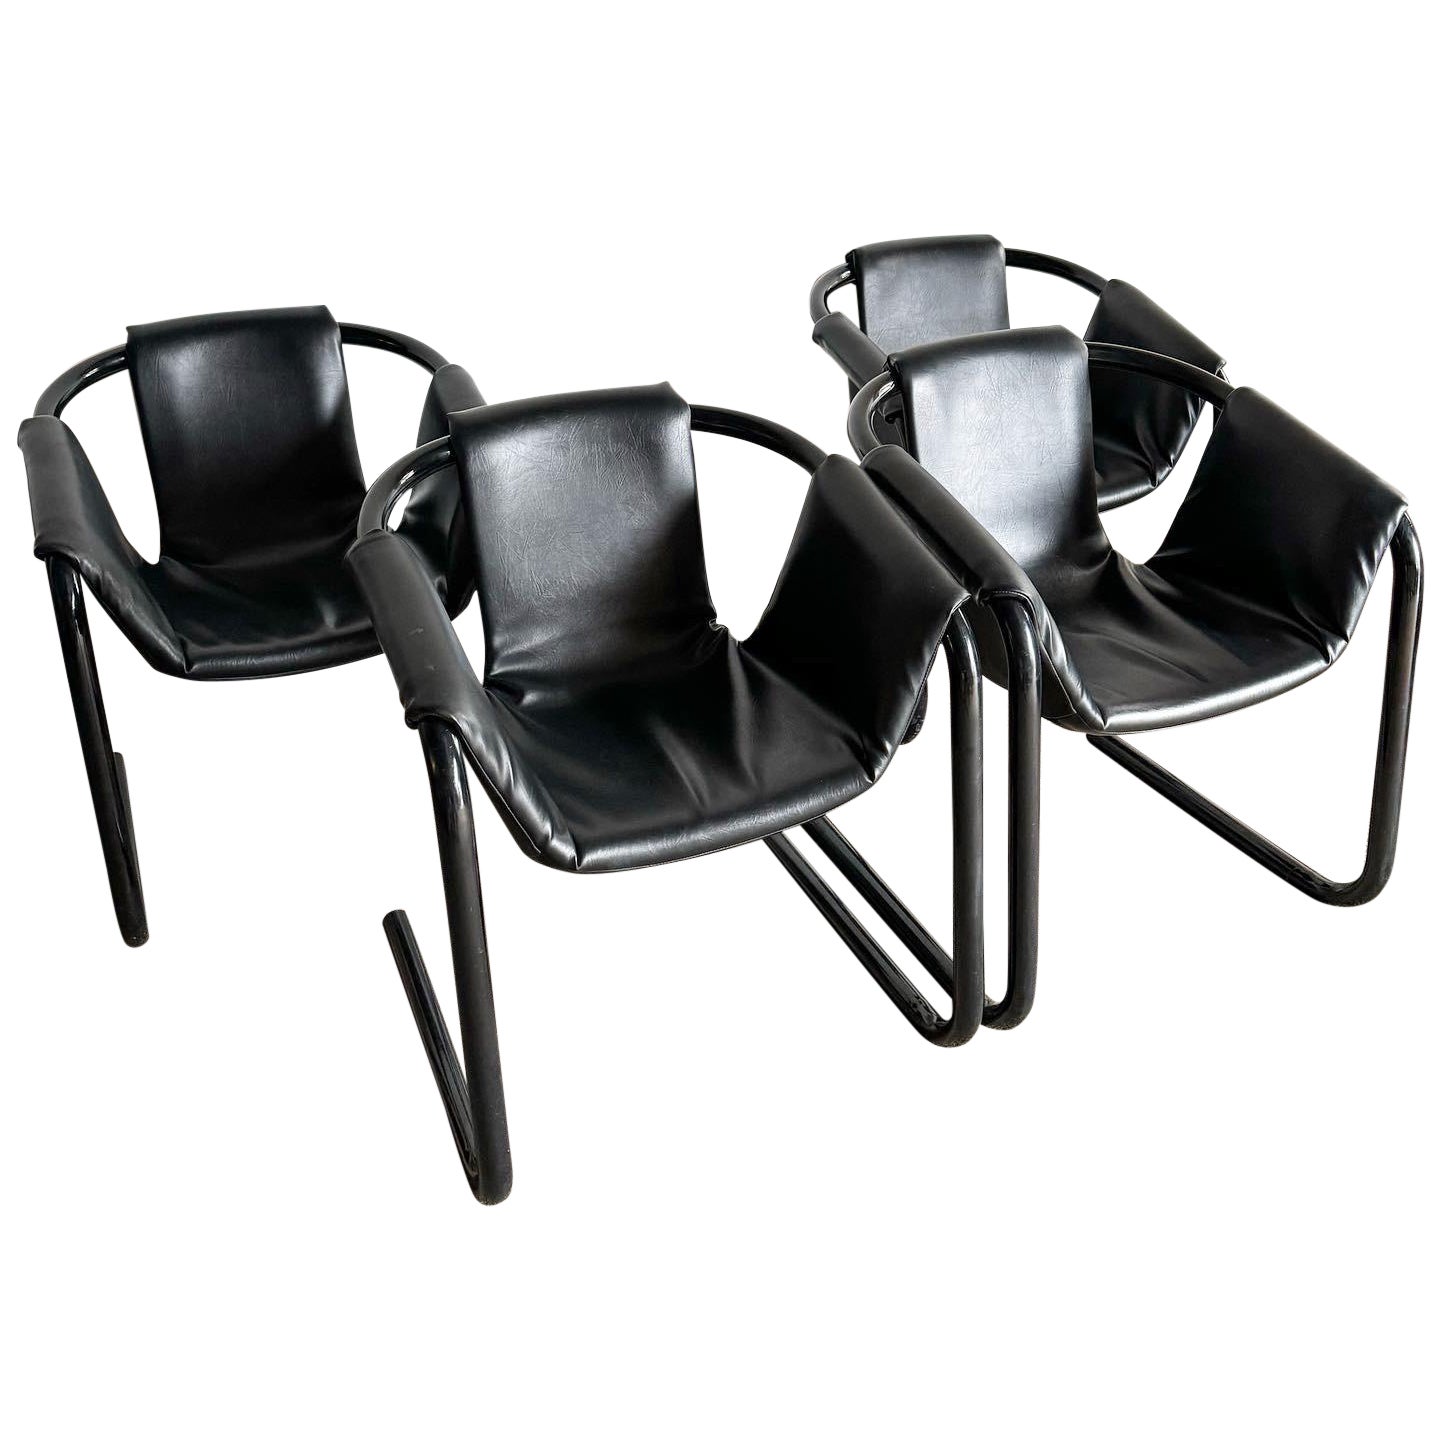 Sling Chairs Vecta aus schwarzem Vinyl und schwarzem Metall mit Zermatt-Röhren, 1970er Jahre